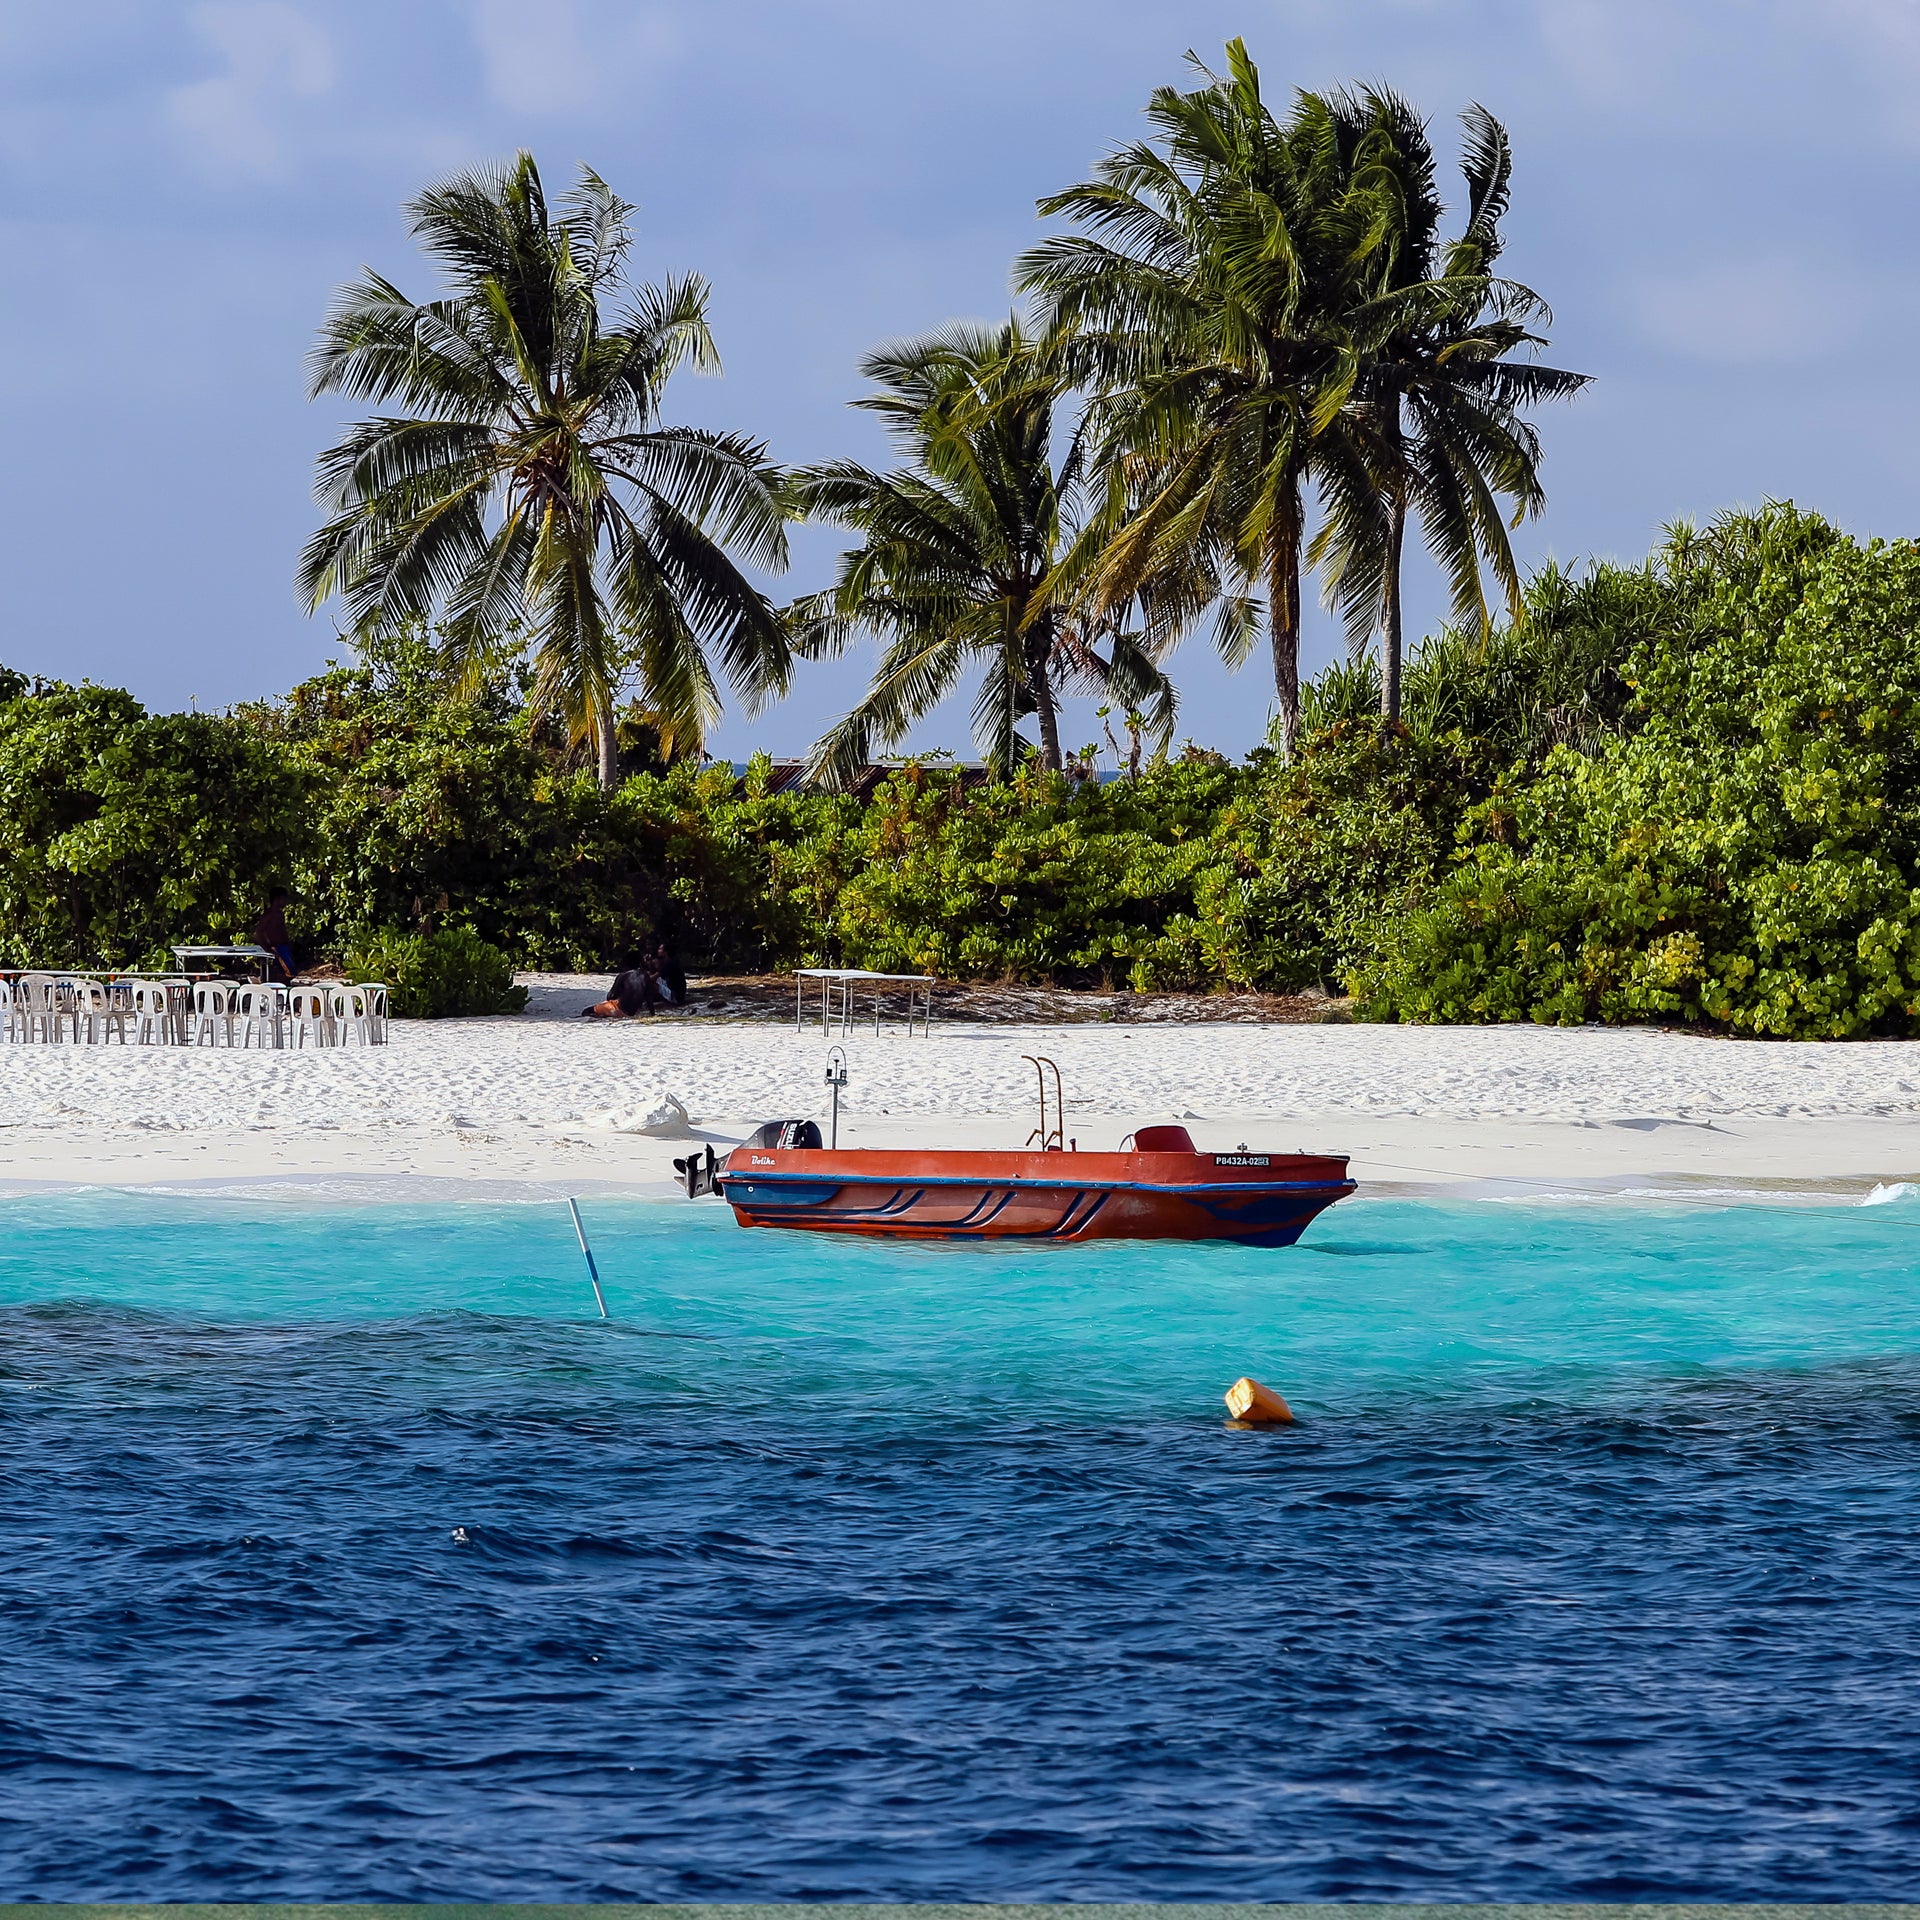 Palme sulla spiaggia che puoi ammirare durante la crociera alle Maldive